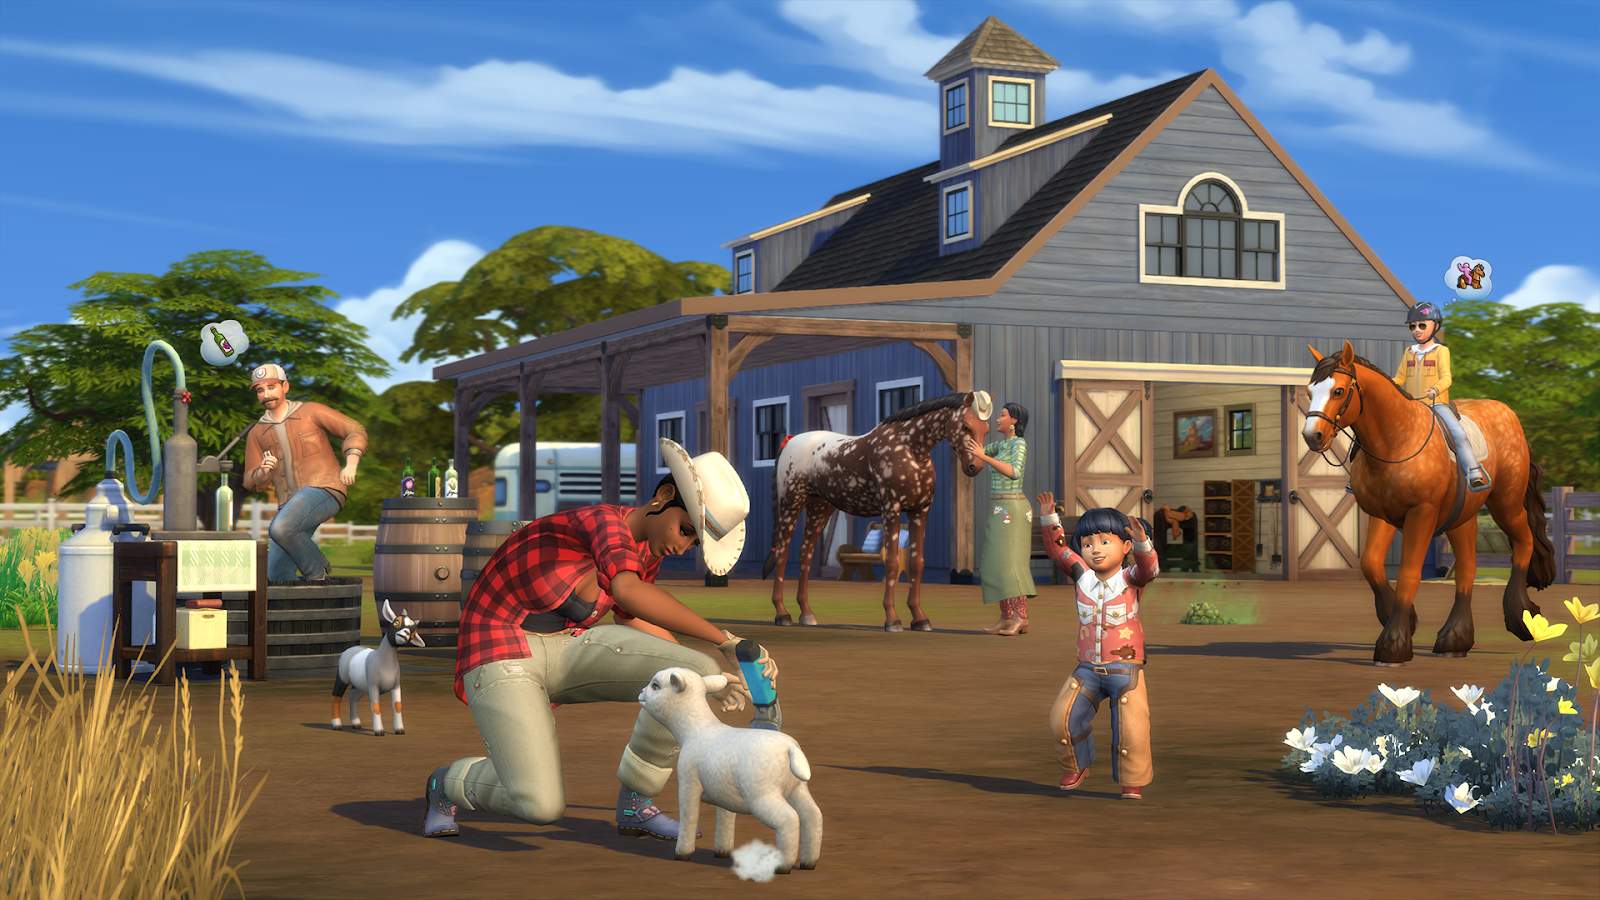 The Sims 4: Tomando As Rédeas estará disponível em 20 de julho